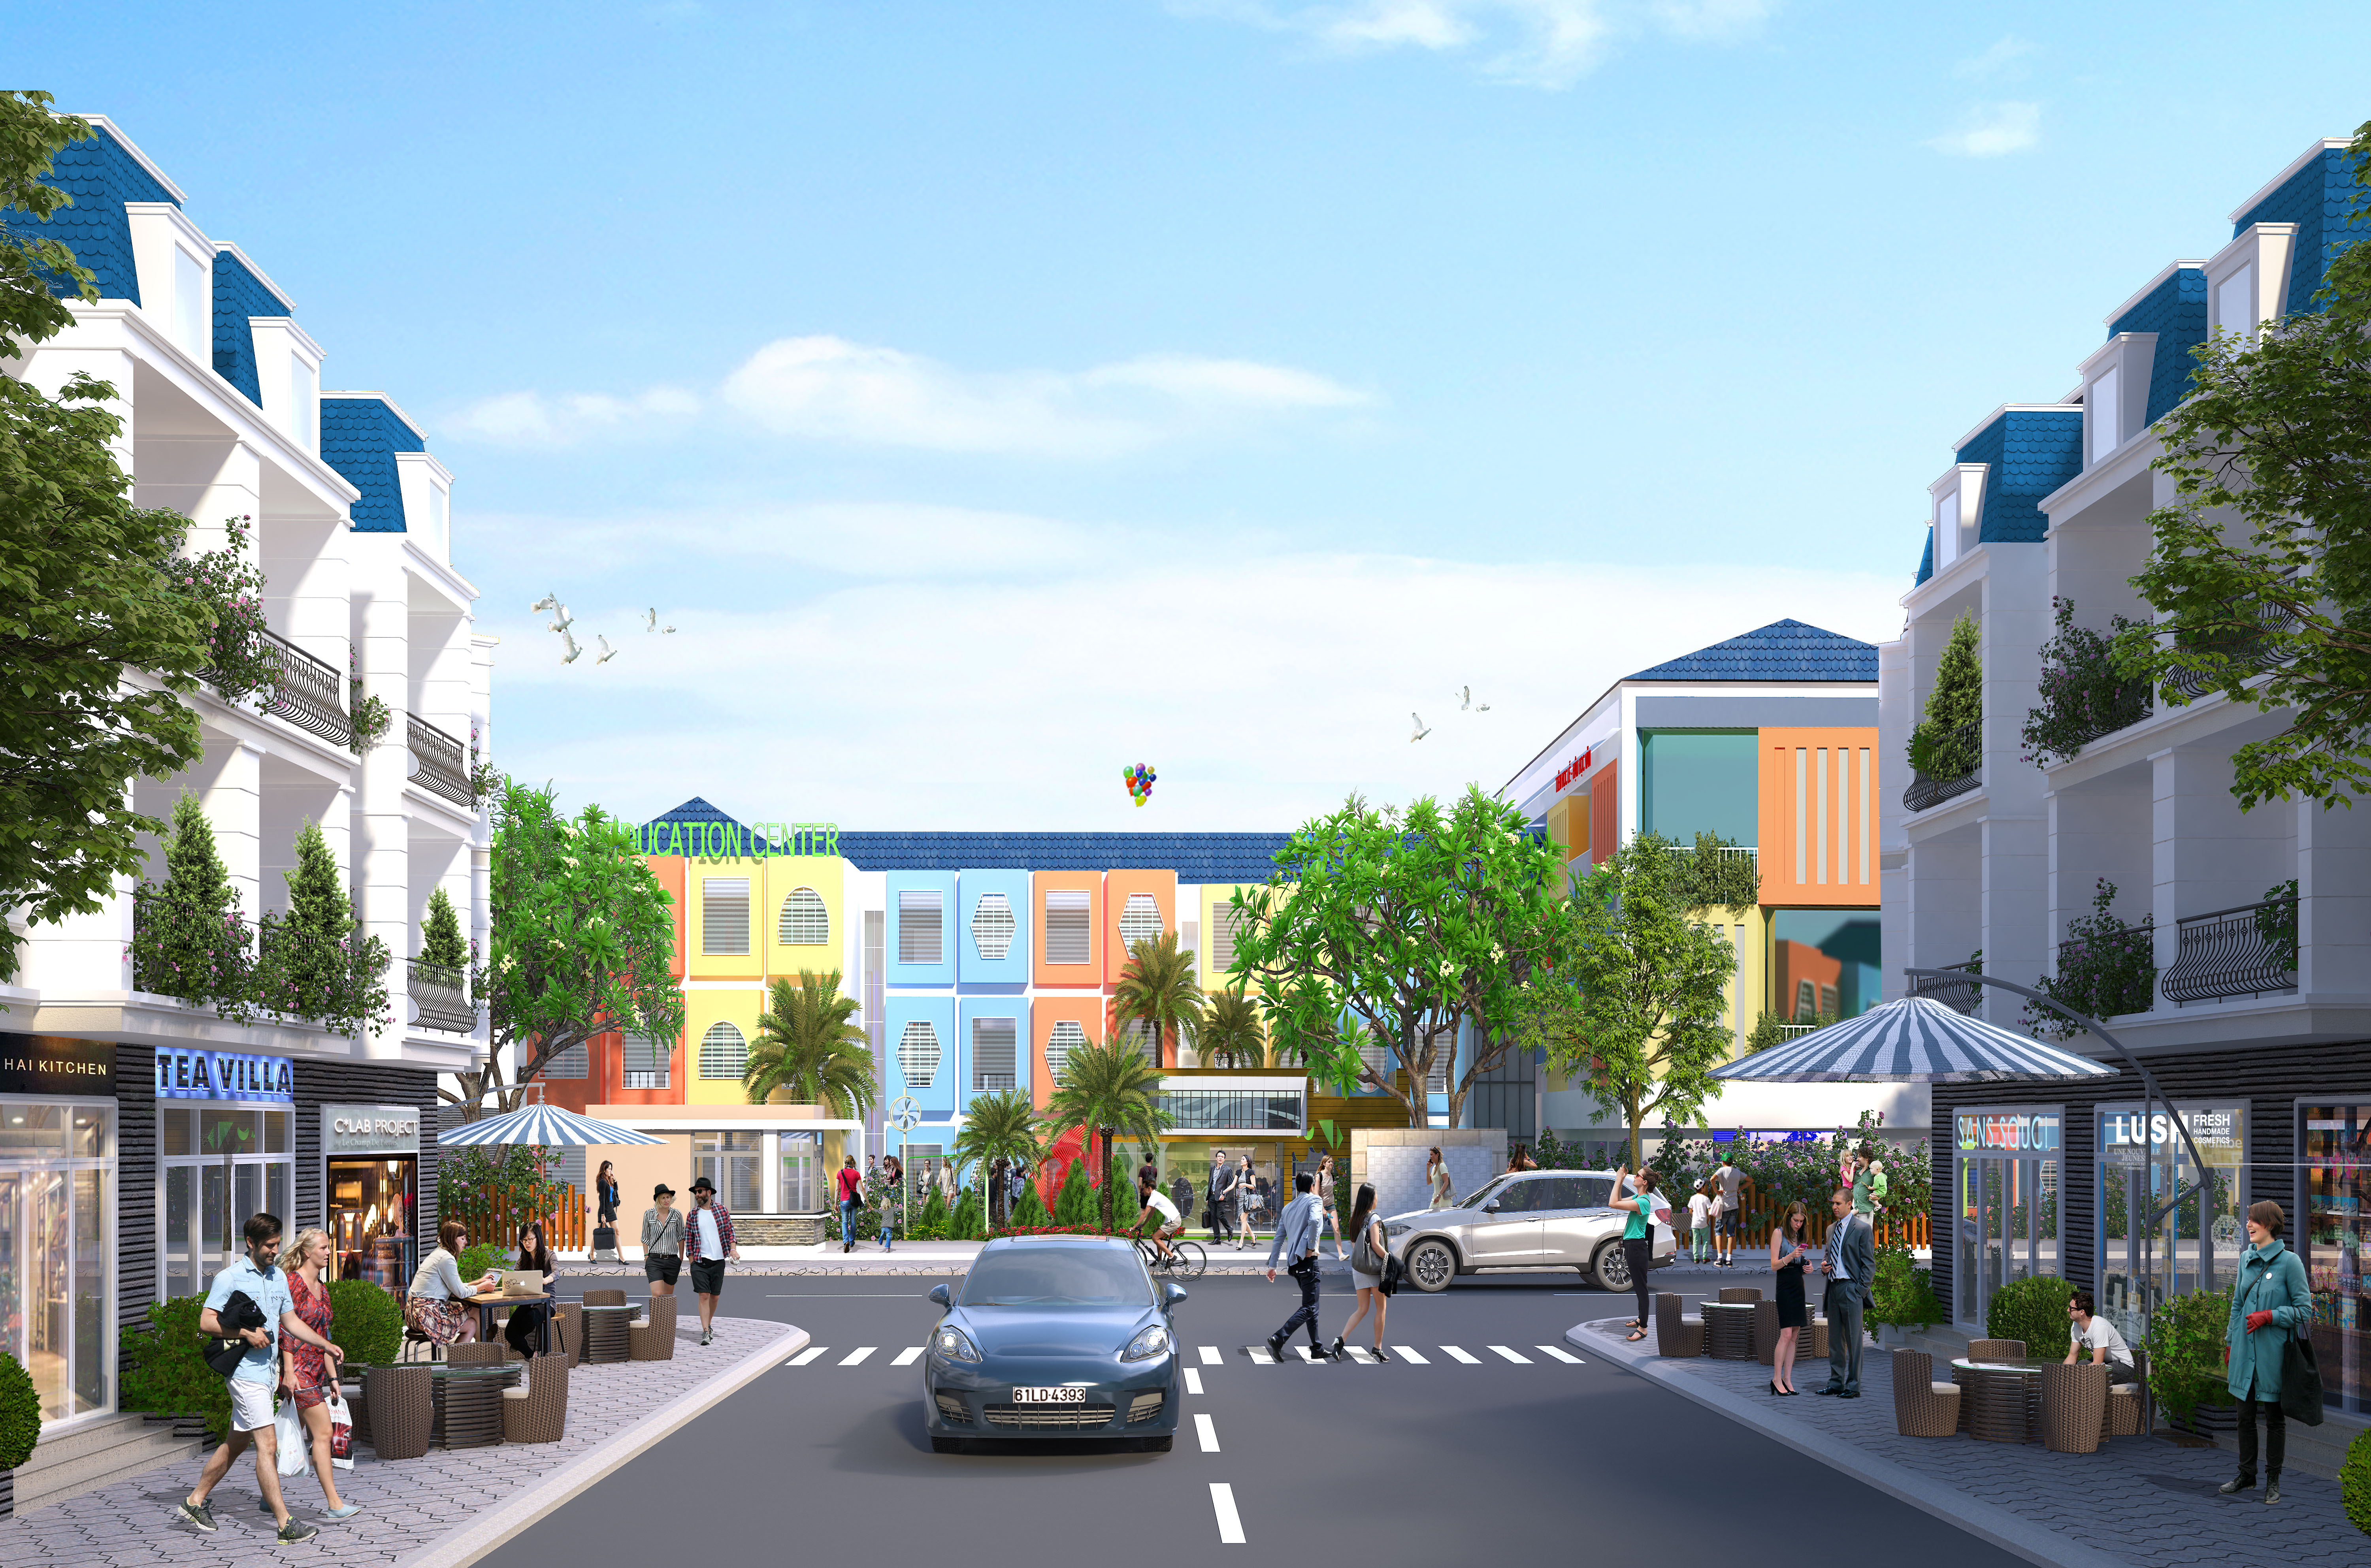 Quy hoạch hiện đại của khu đô thị 5F Capella góp phần nâng tầm diện mạo đô thị cho Tân Uyên.